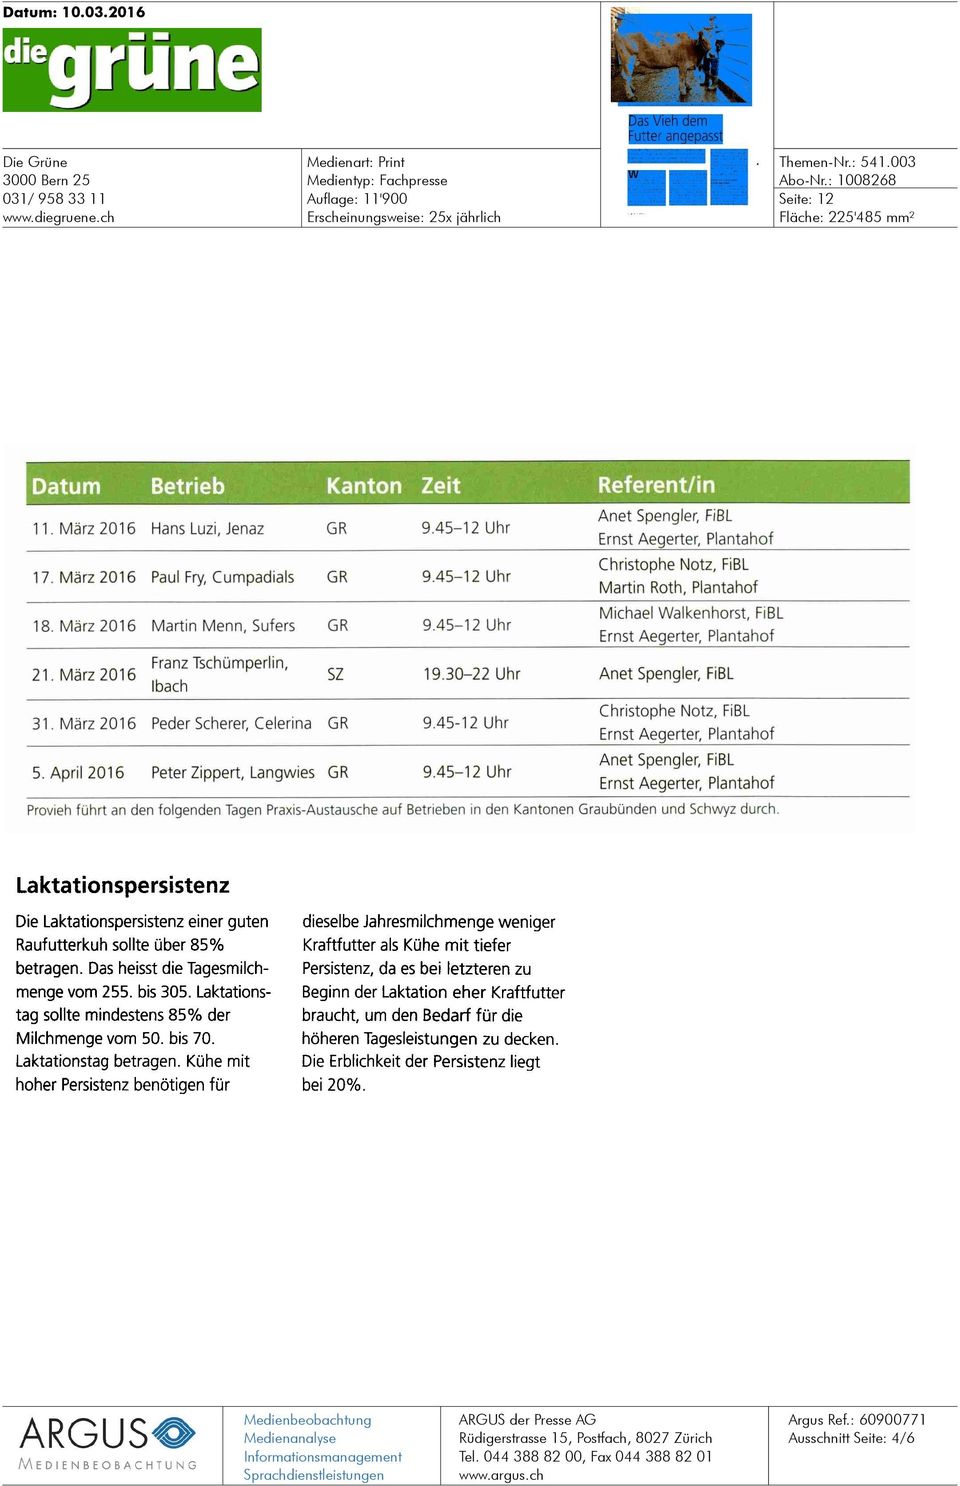 März 2016 Peder Scherer, Celerina GR 9.45-12 Uhr Christophe Notz, FiBL 5. April 2016 Peter Zippert, Langwies GR 9.